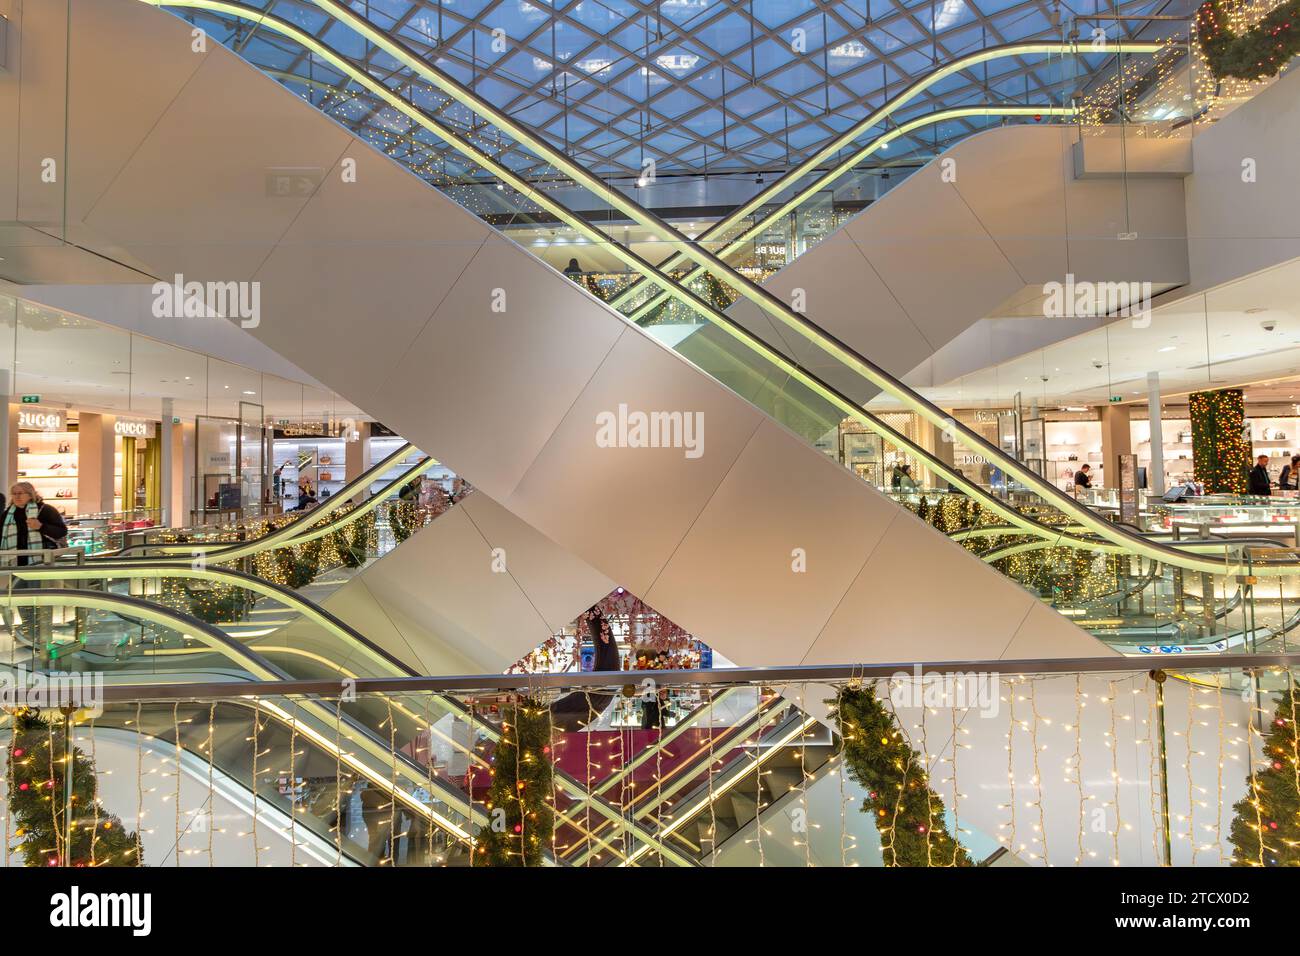 Les escalators de la Samaritaine, un grand magasin à Paris dans le 1e arrondissement de Paris France Banque D'Images